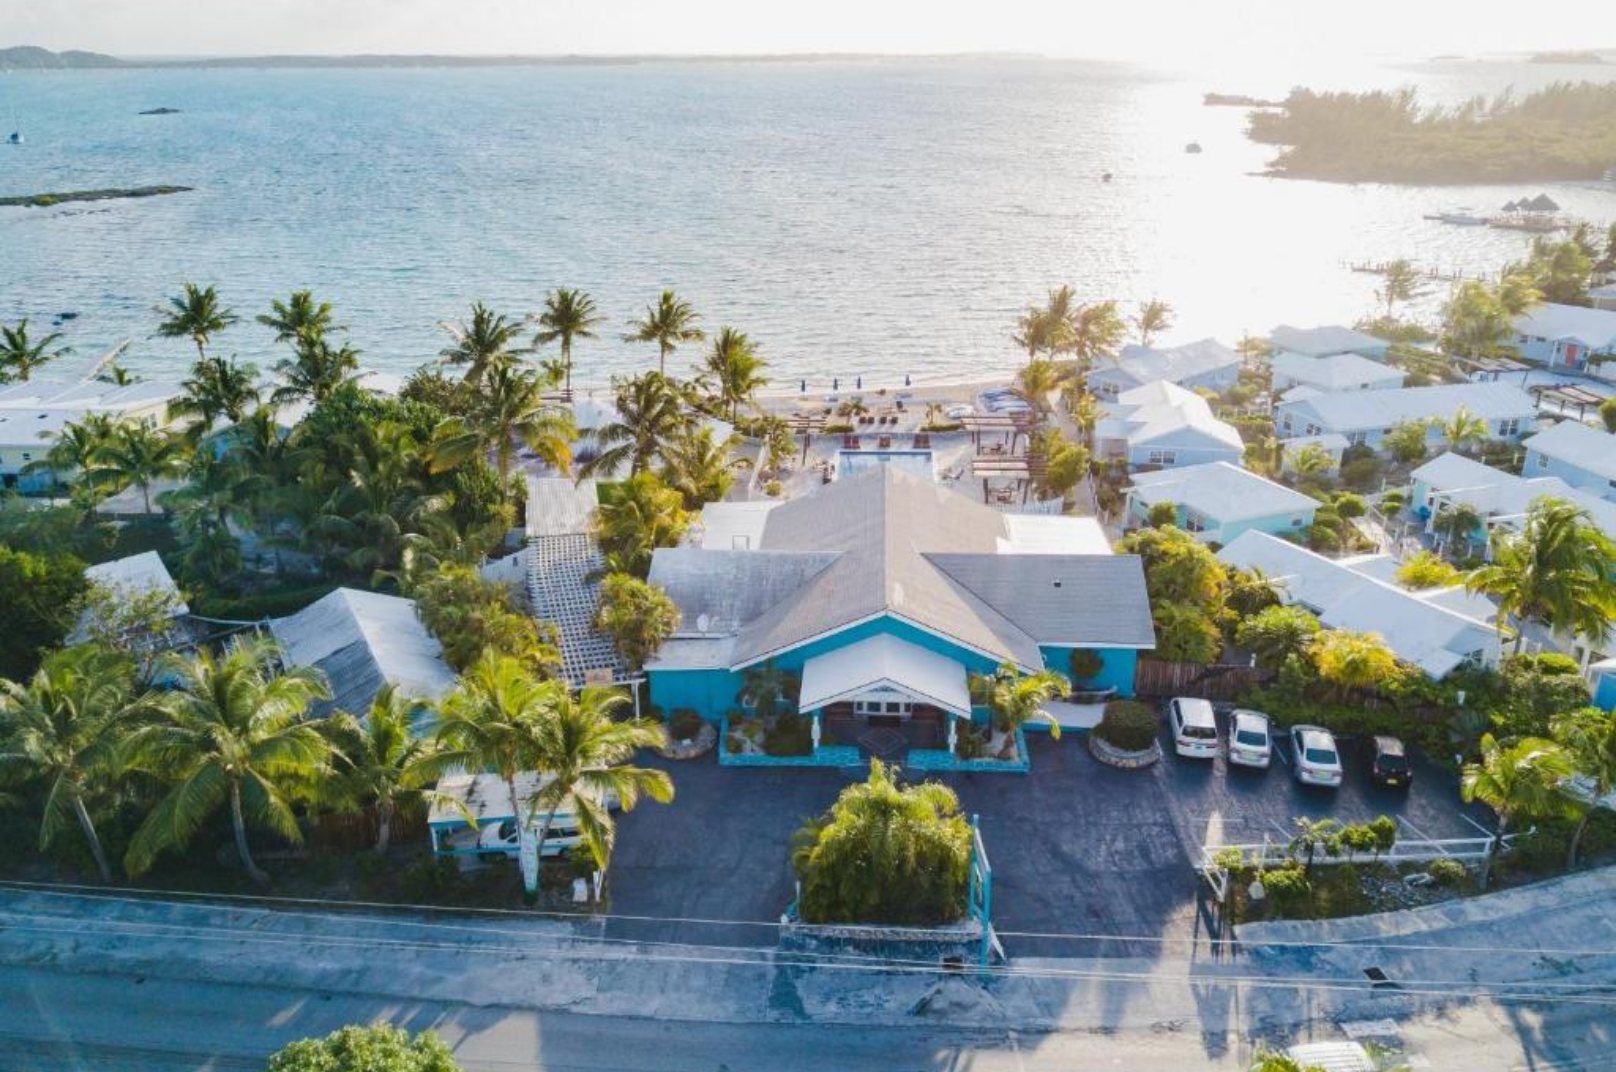 Top Exuma, The Bahamas Hotels